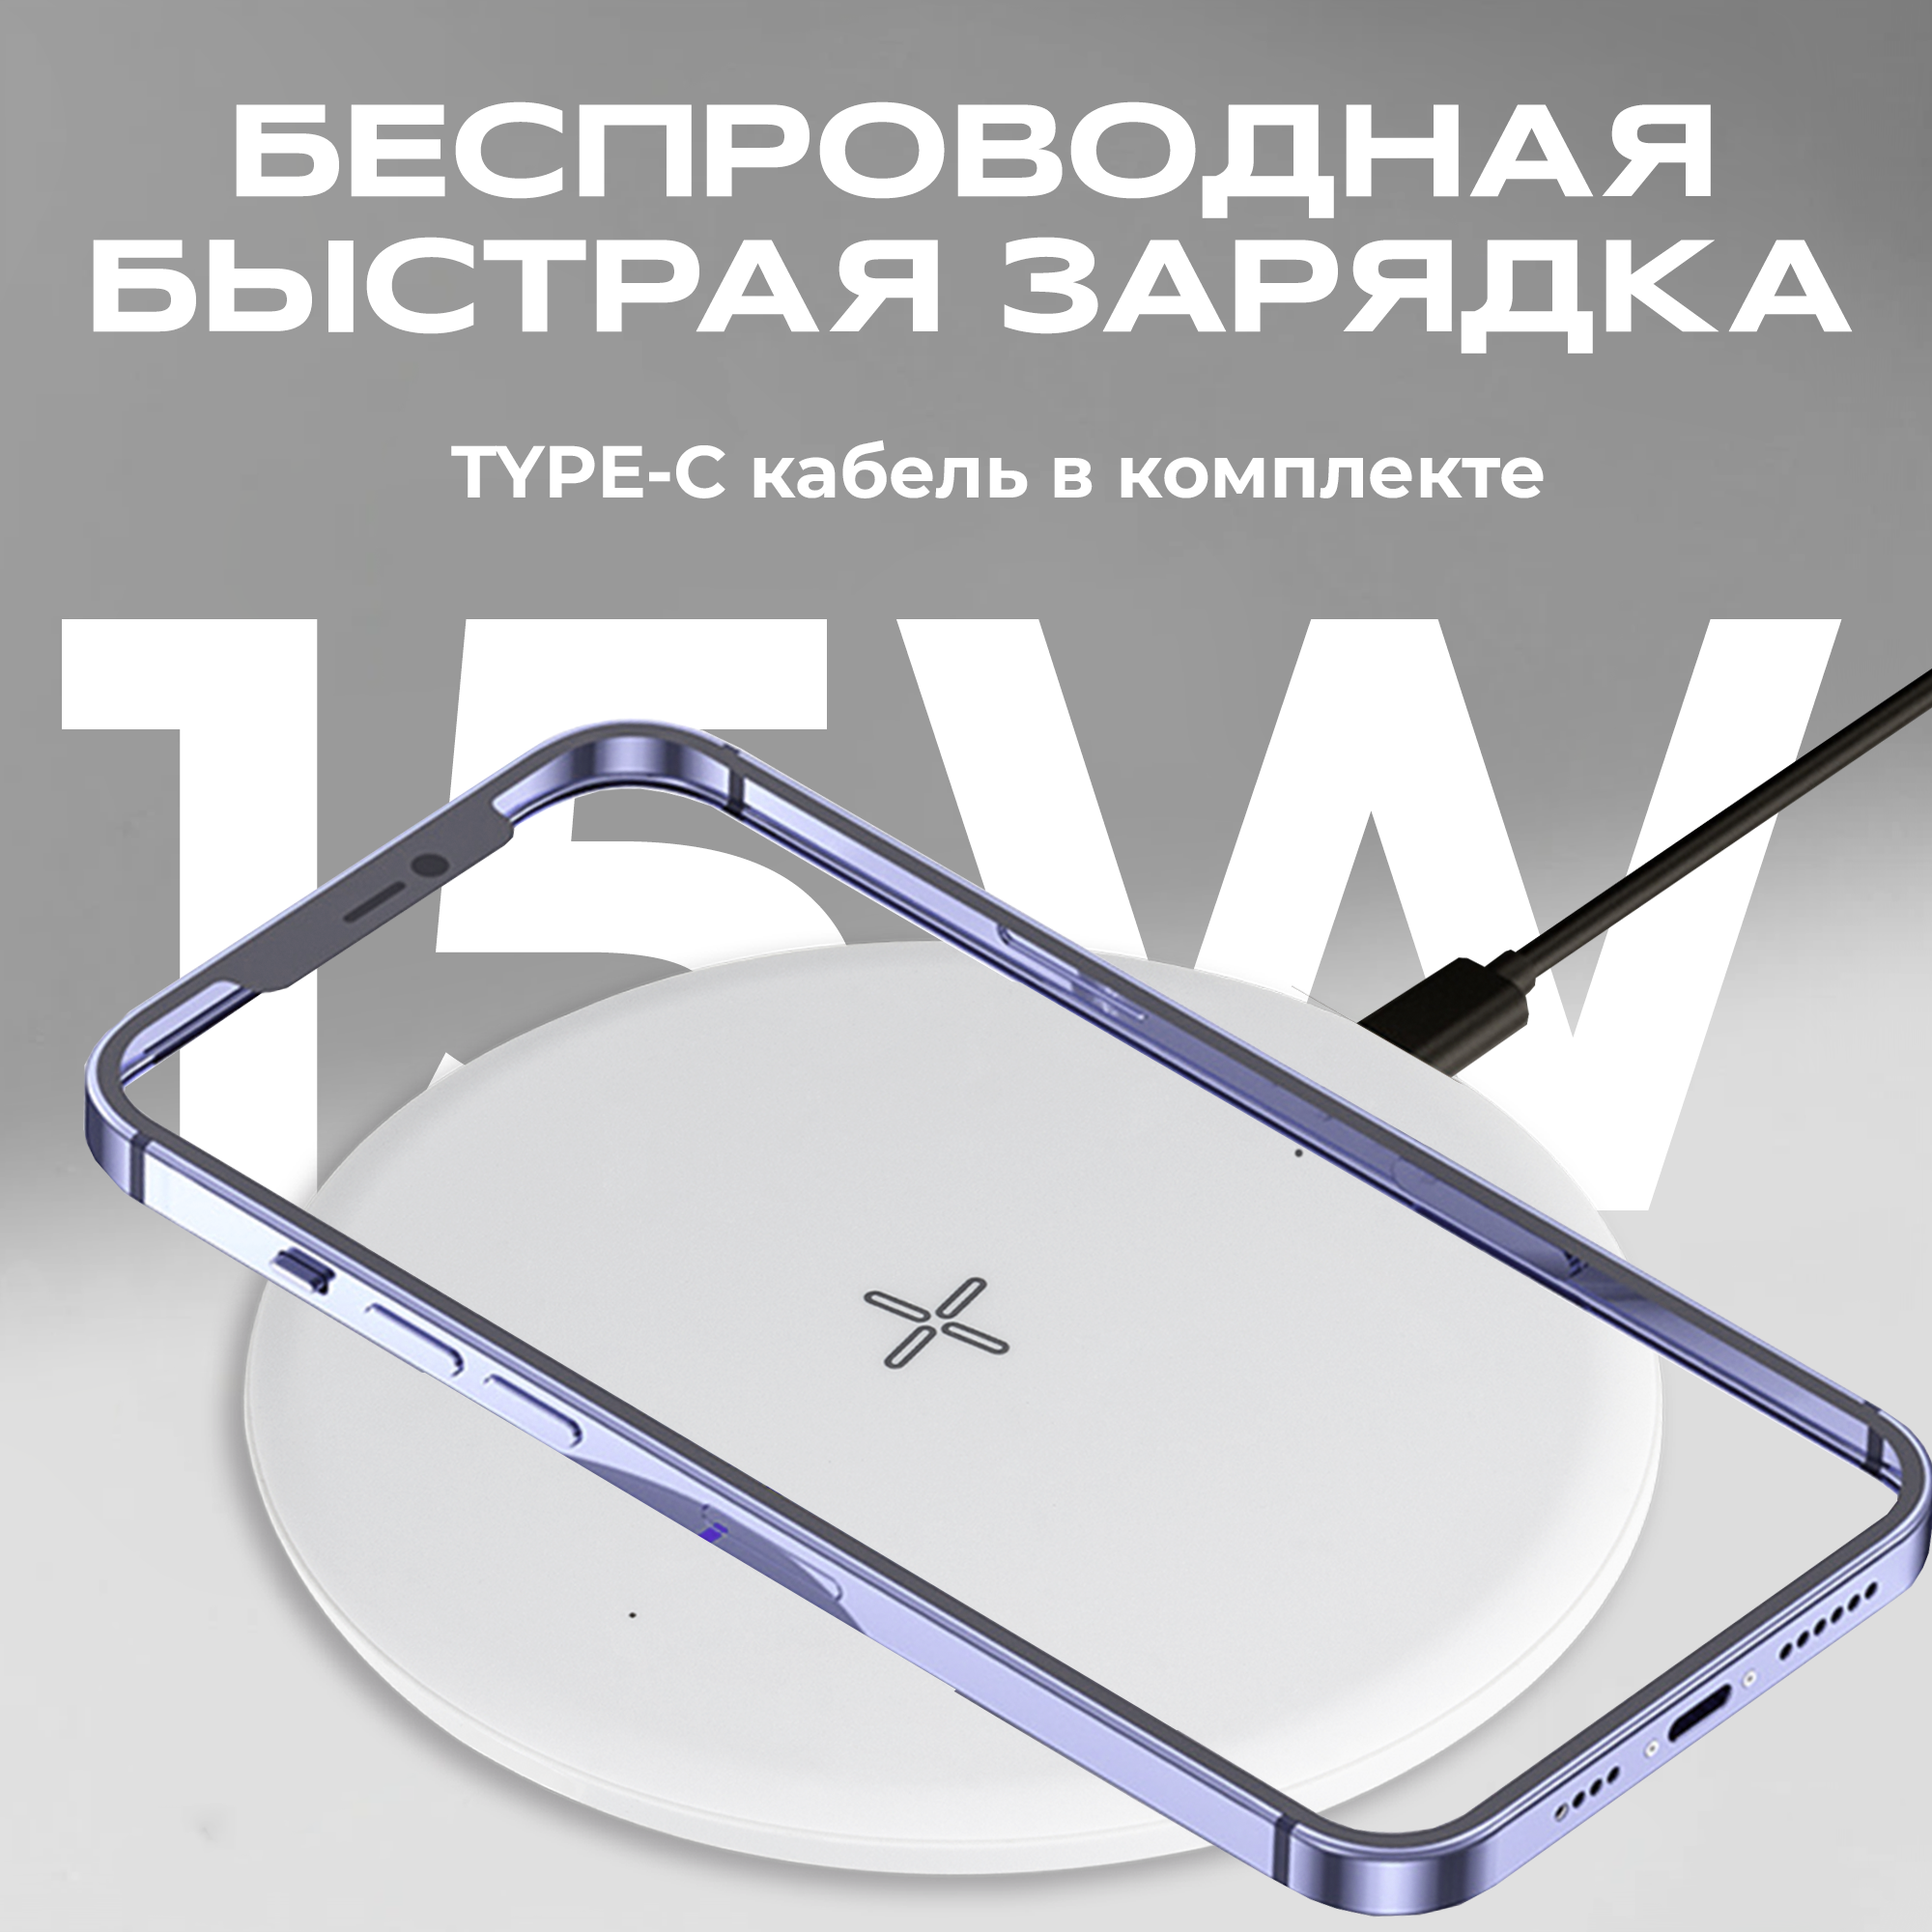 Беспроводная зарядка для айфона с кабелем Type-C, WALKER, WH-51, 15Вт, сетевое зарядное устройство для телефона на iphone, самсунг, xiaomi, белая